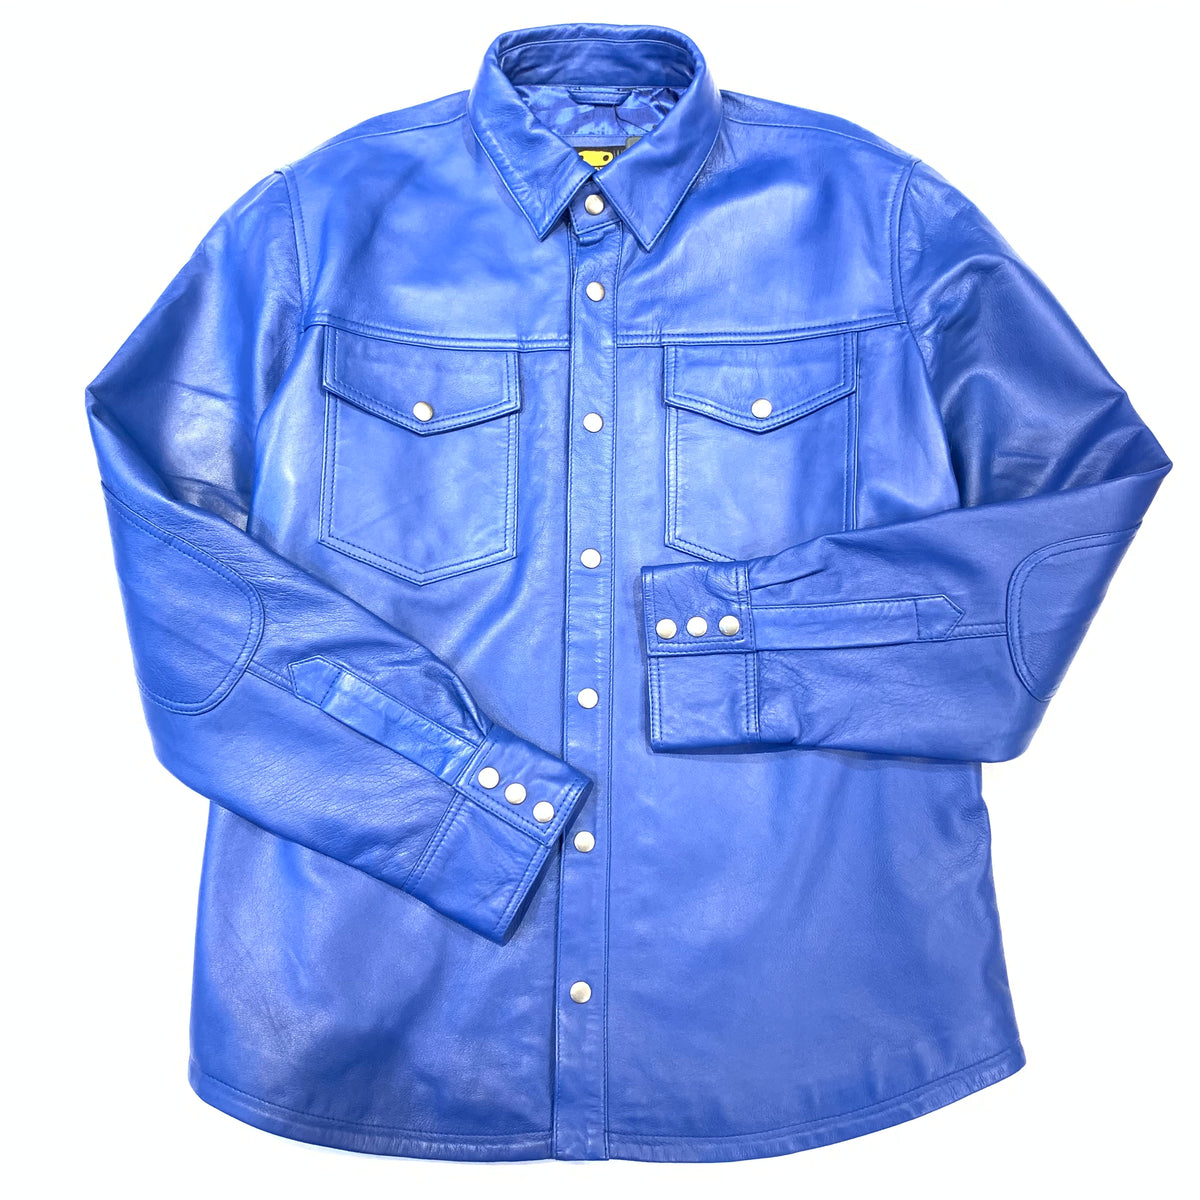 Kashani Men's Royal Blue Lambskin Button-Up Shirt - Dudes Boutique